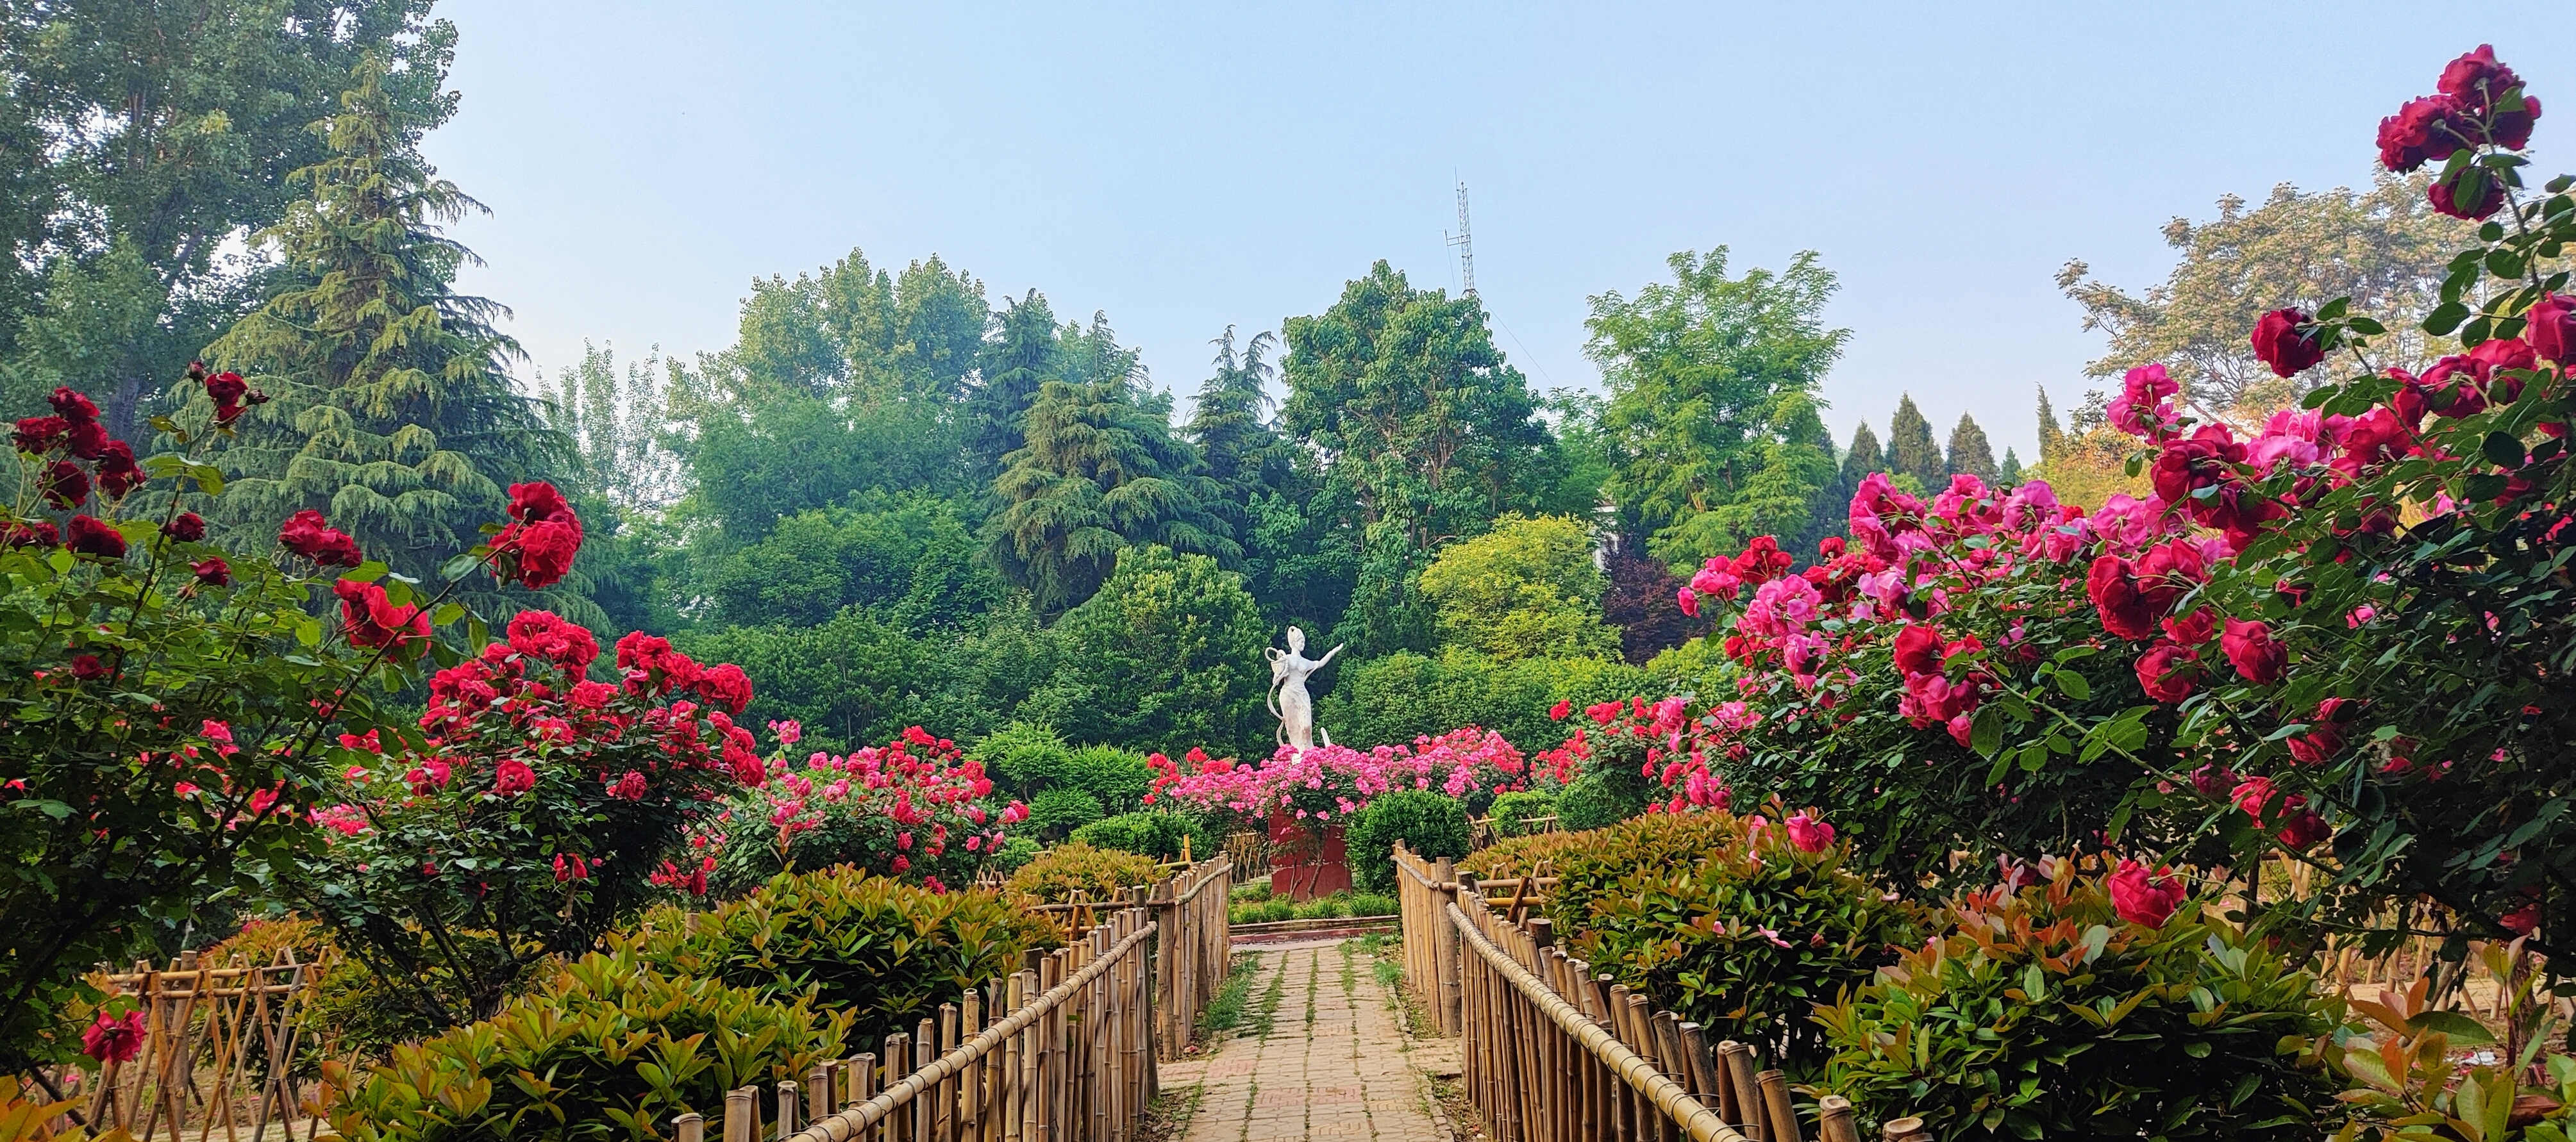 拍摄时间:2024年5月7日拍摄地点:禹州市森林植物园手机随拍:贺景昌